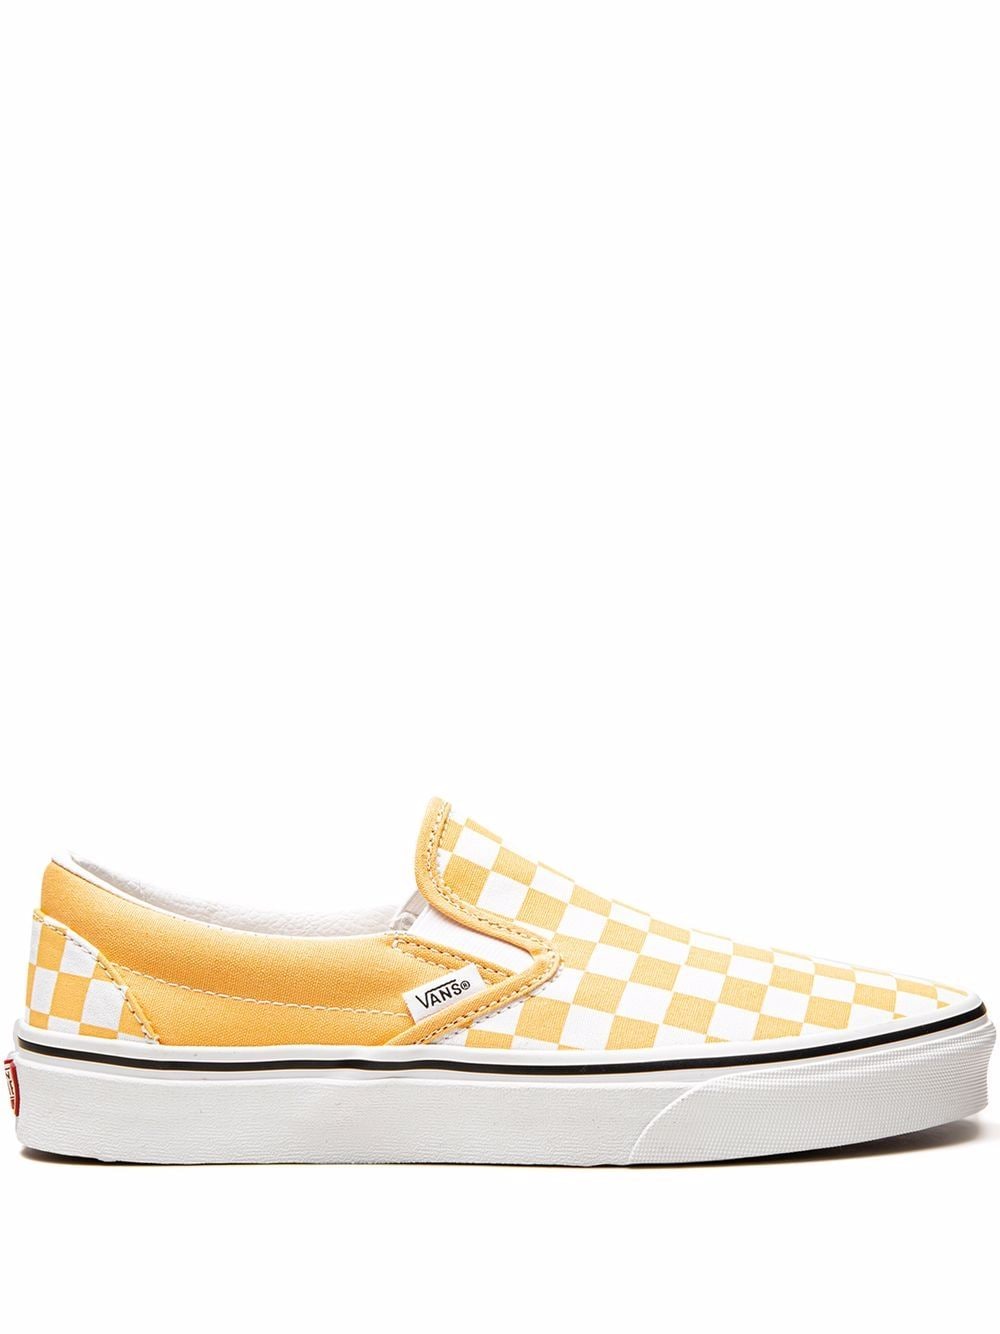 Vans Classic Slip-On sneakers - Yellow von Vans